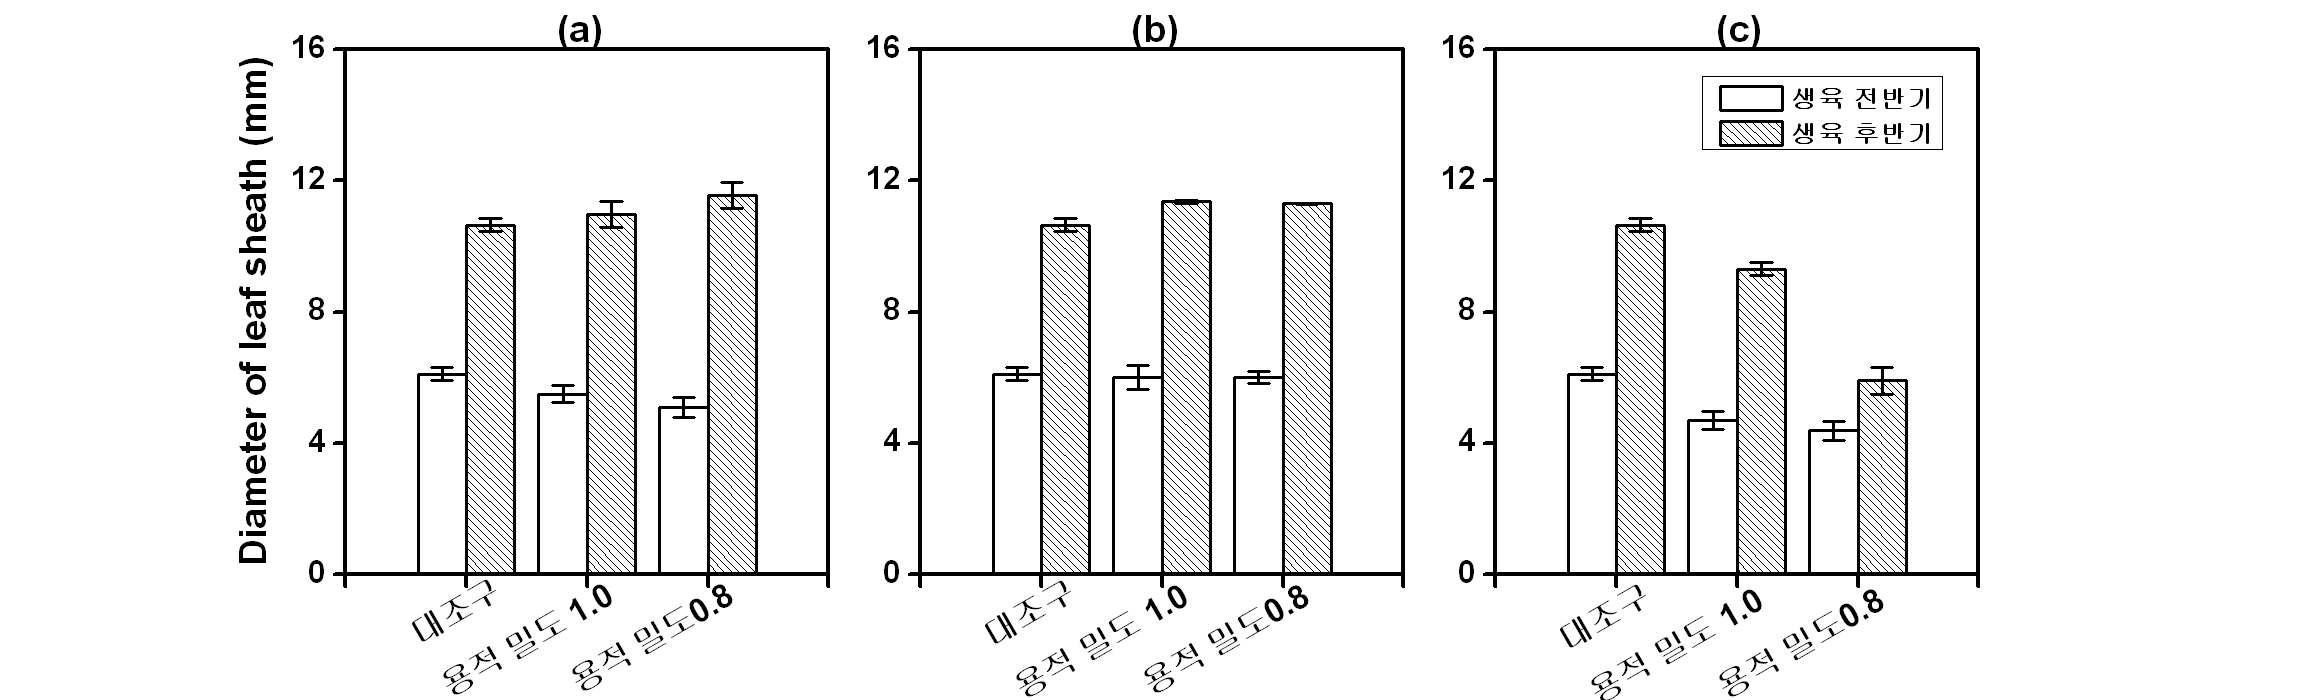 토양 용적 밀도에 따른 마늘의 엽초경, (a) 코코피트; (b) 우드칩; (c) 퇴비